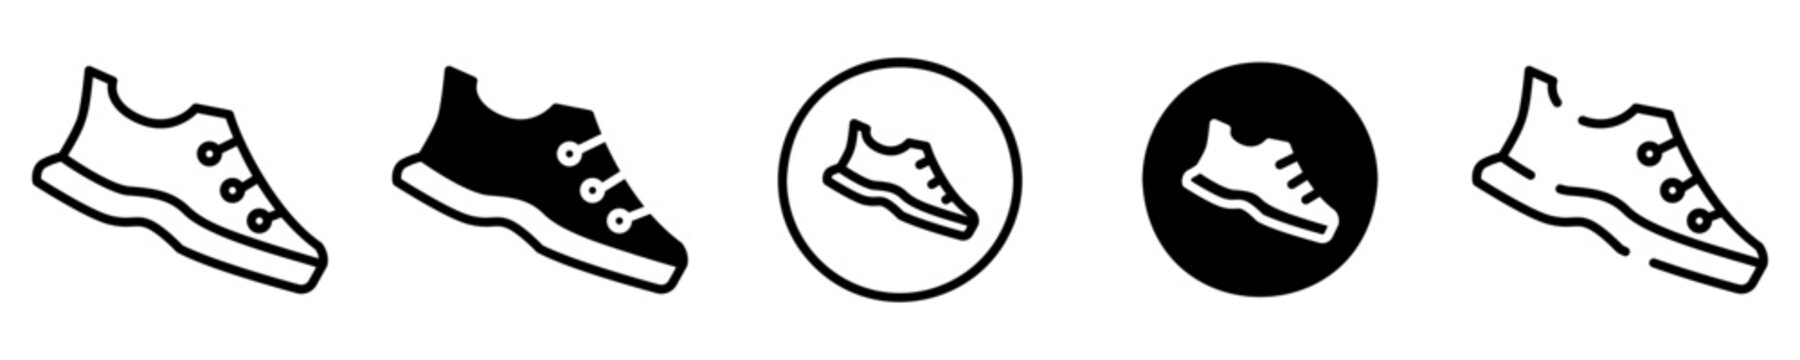 Conjunto de iconos de zapatos. Calzado. Concepto de deporte, atletismo, velocidad. Zapatos de diferentes estilos. Ilustración vectorial